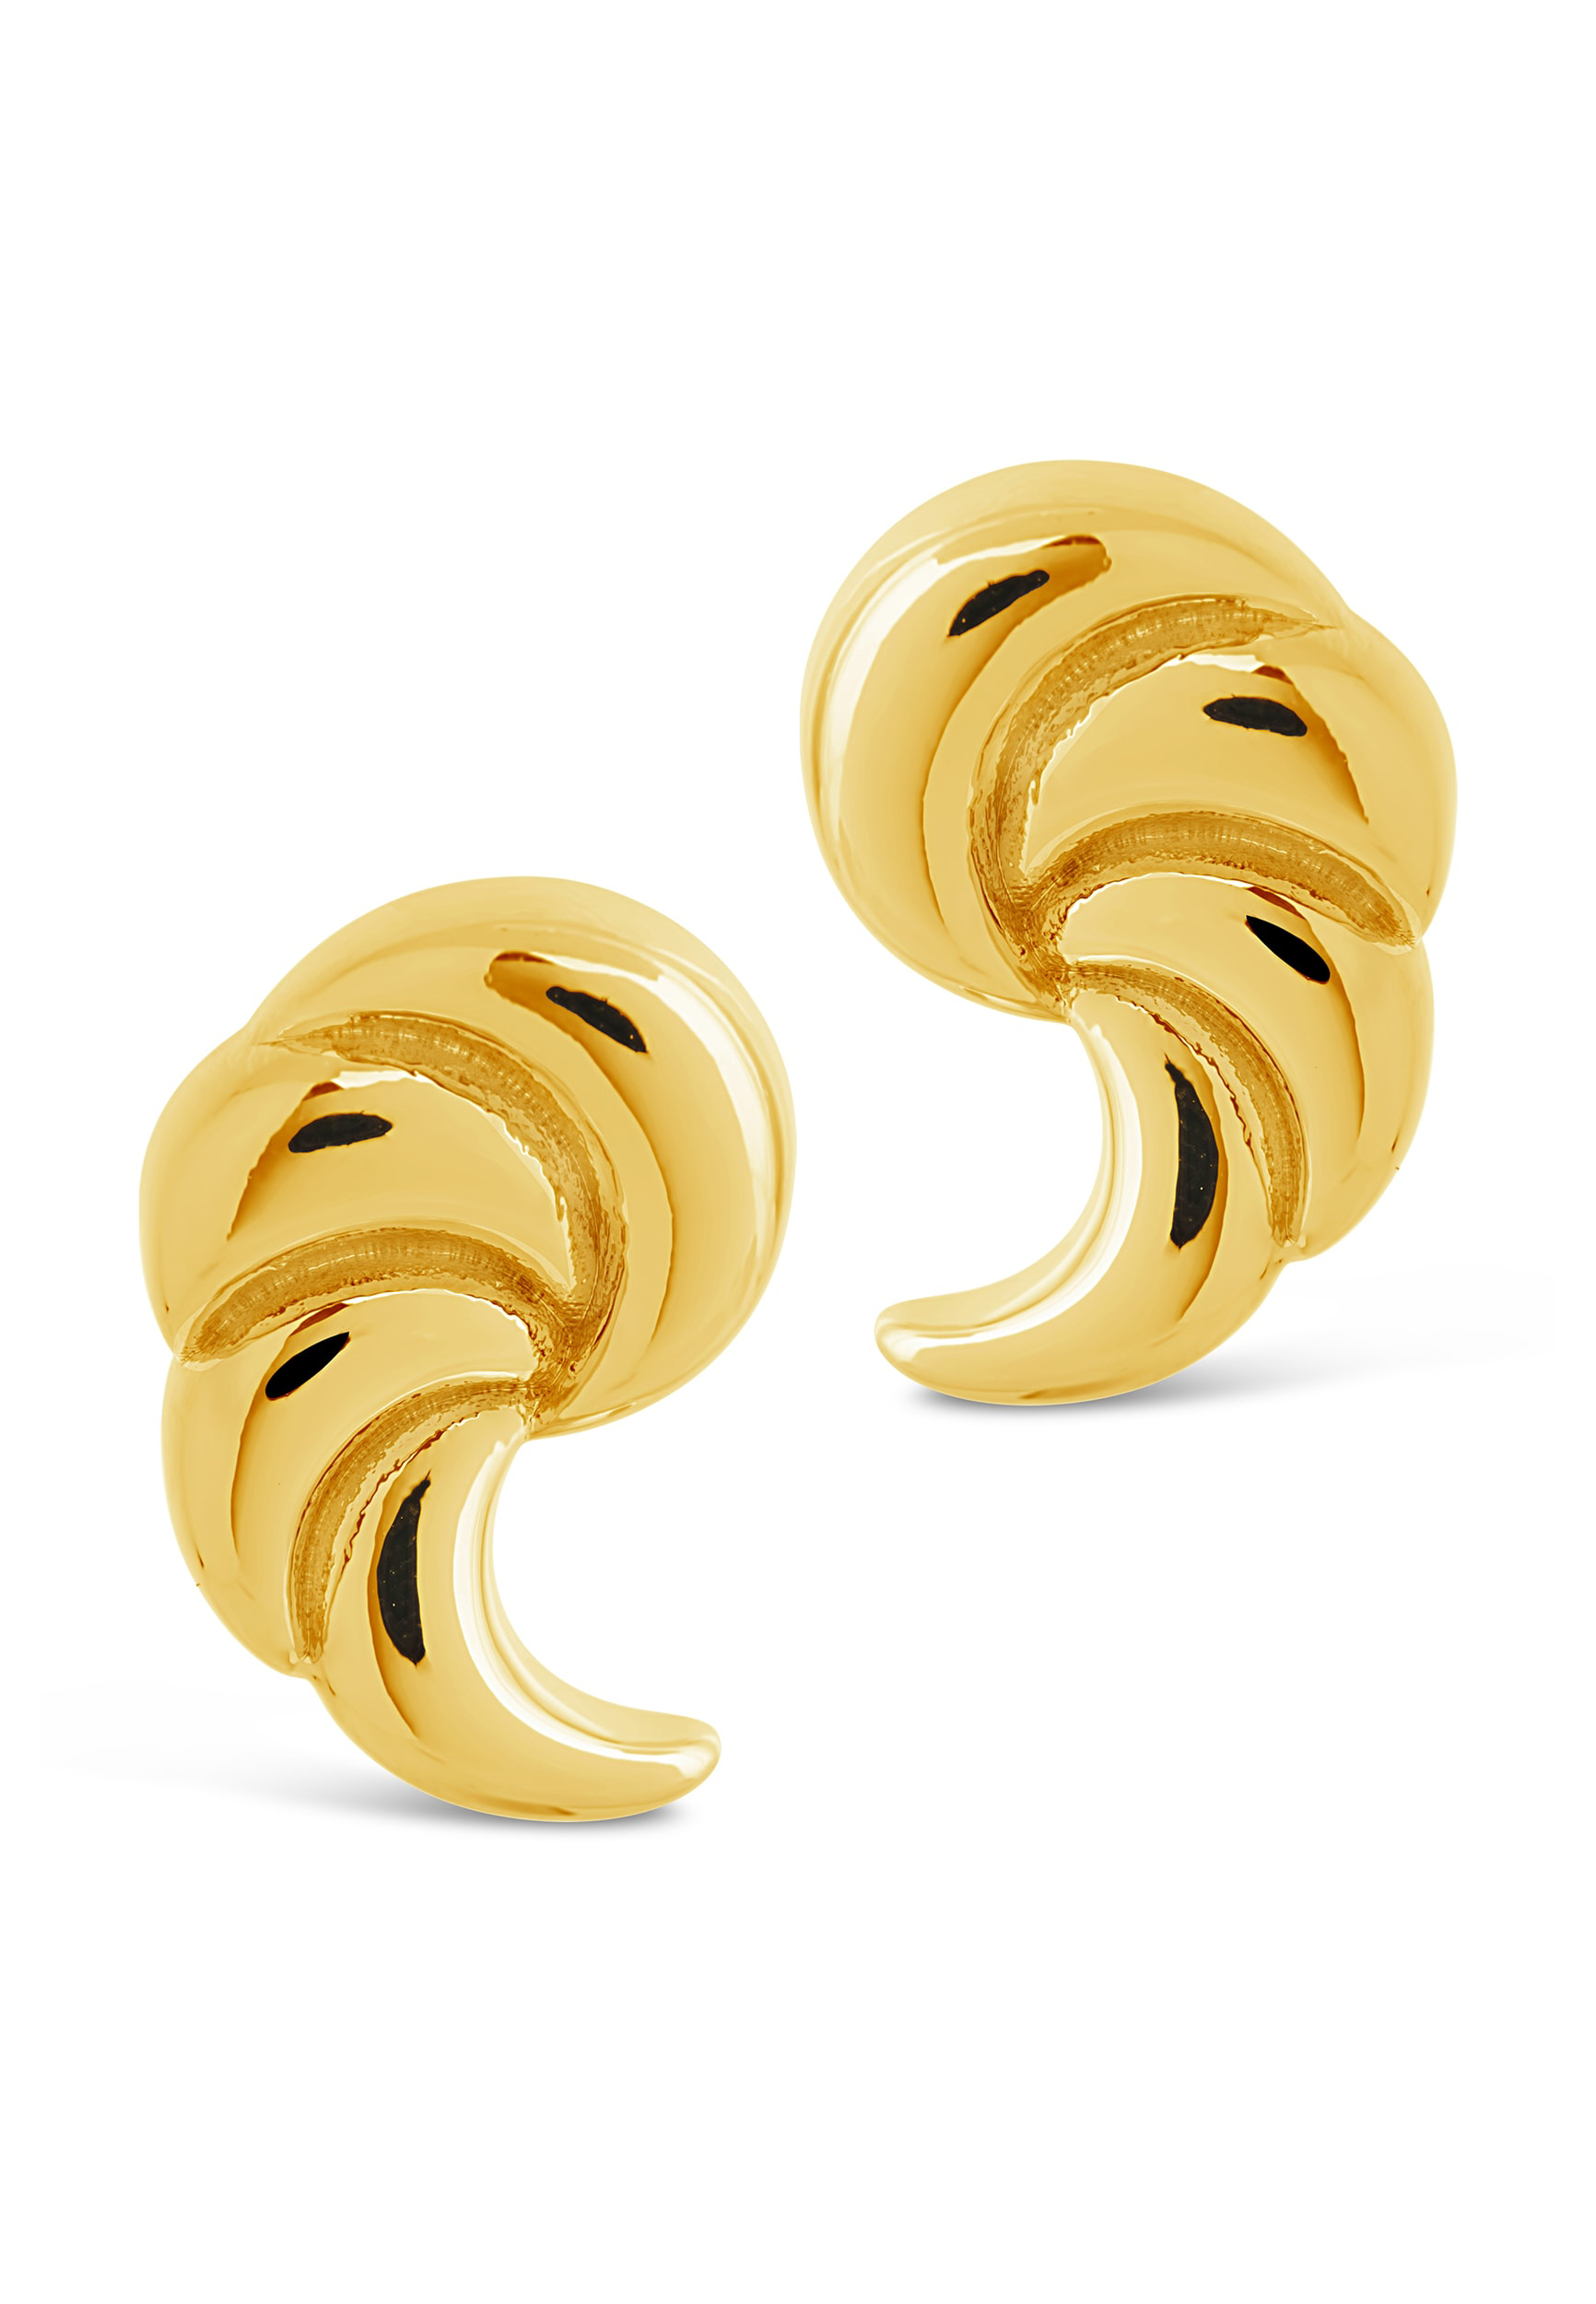 French Horn Stud Earrings